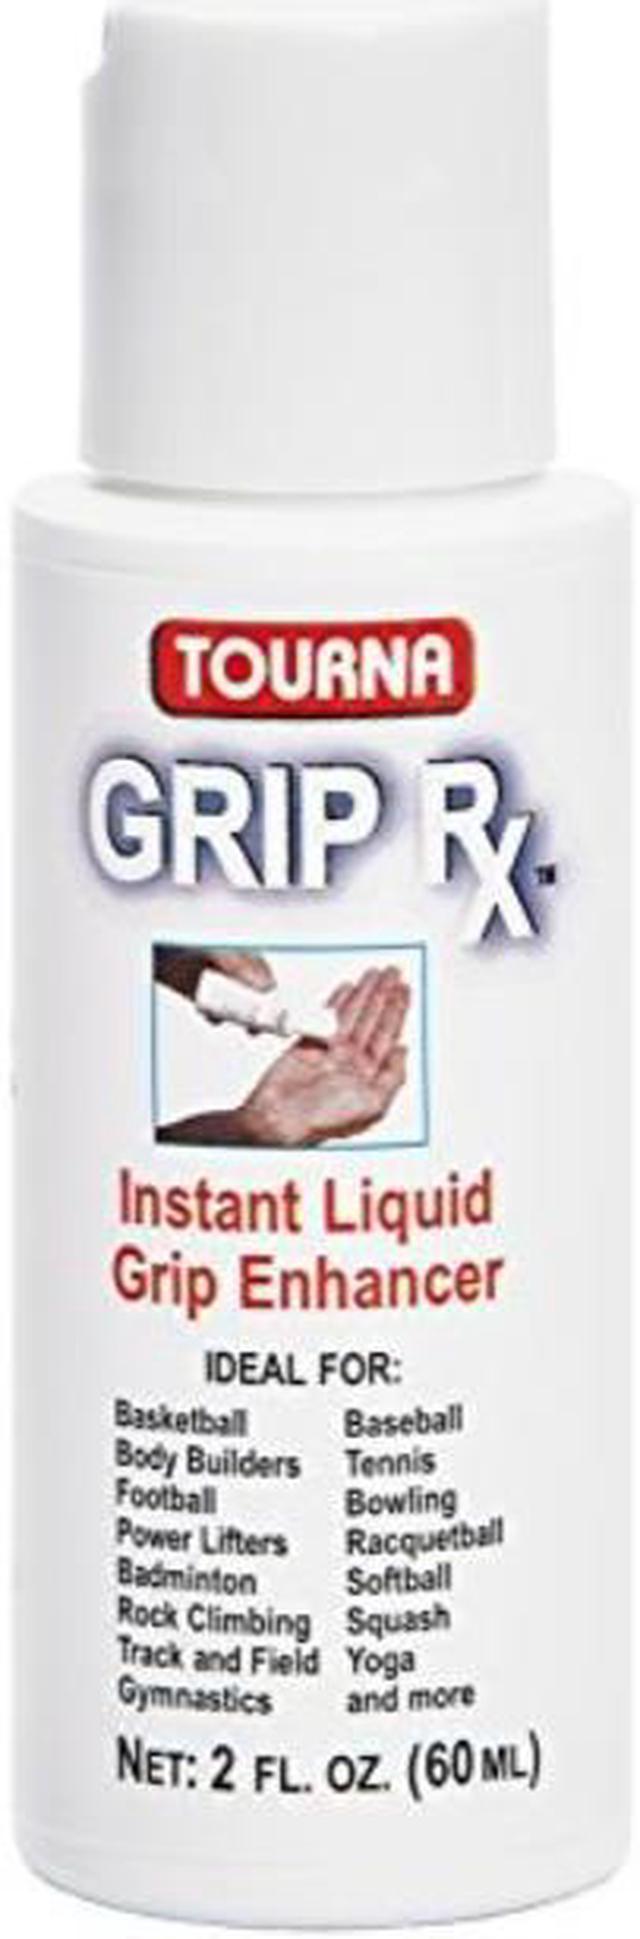 Tourna Grip RX Grip Enhancer